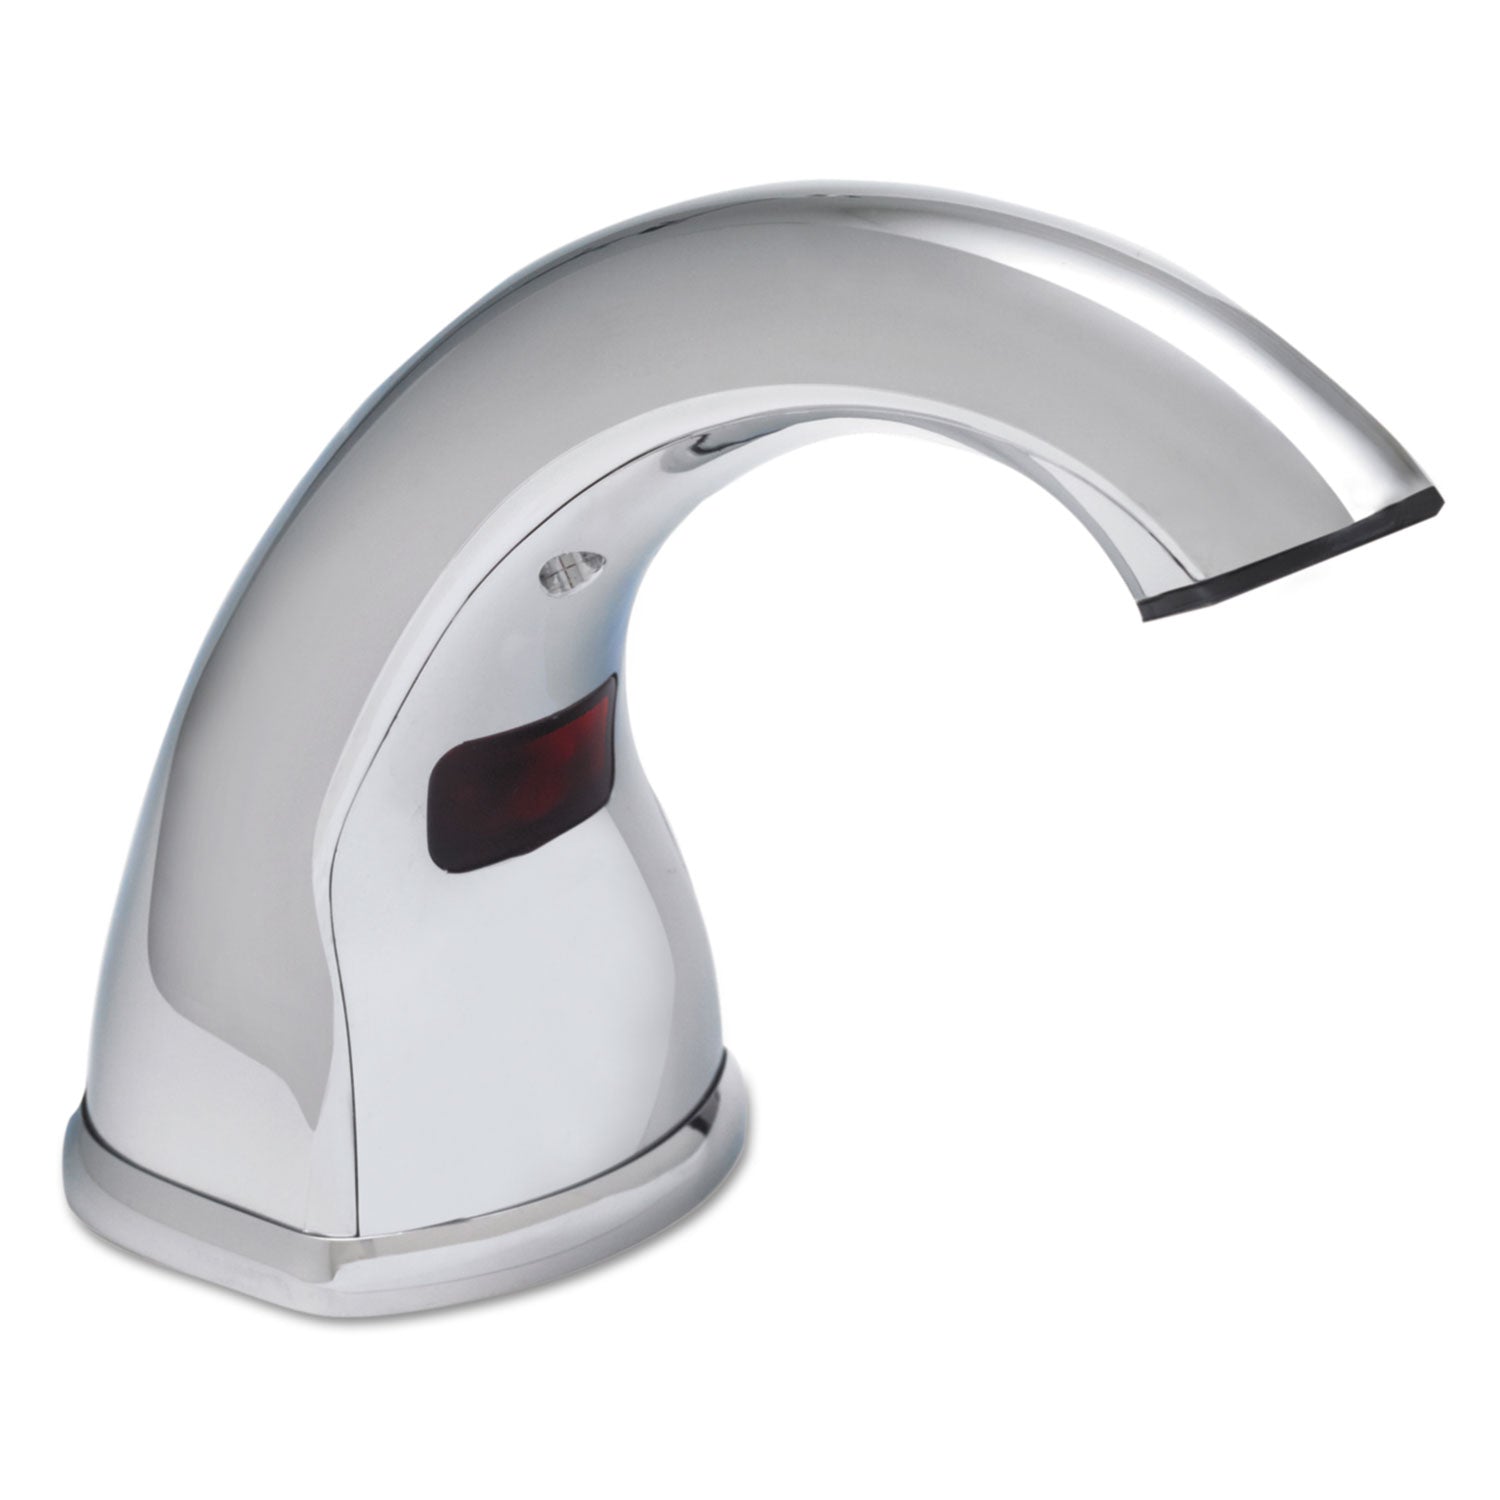 CXi Touch Free Counter Mount Soap Dispenser, 1,500 mL/2,300 mL, 2.25 x 5.75 x 9.39, Chrome - 